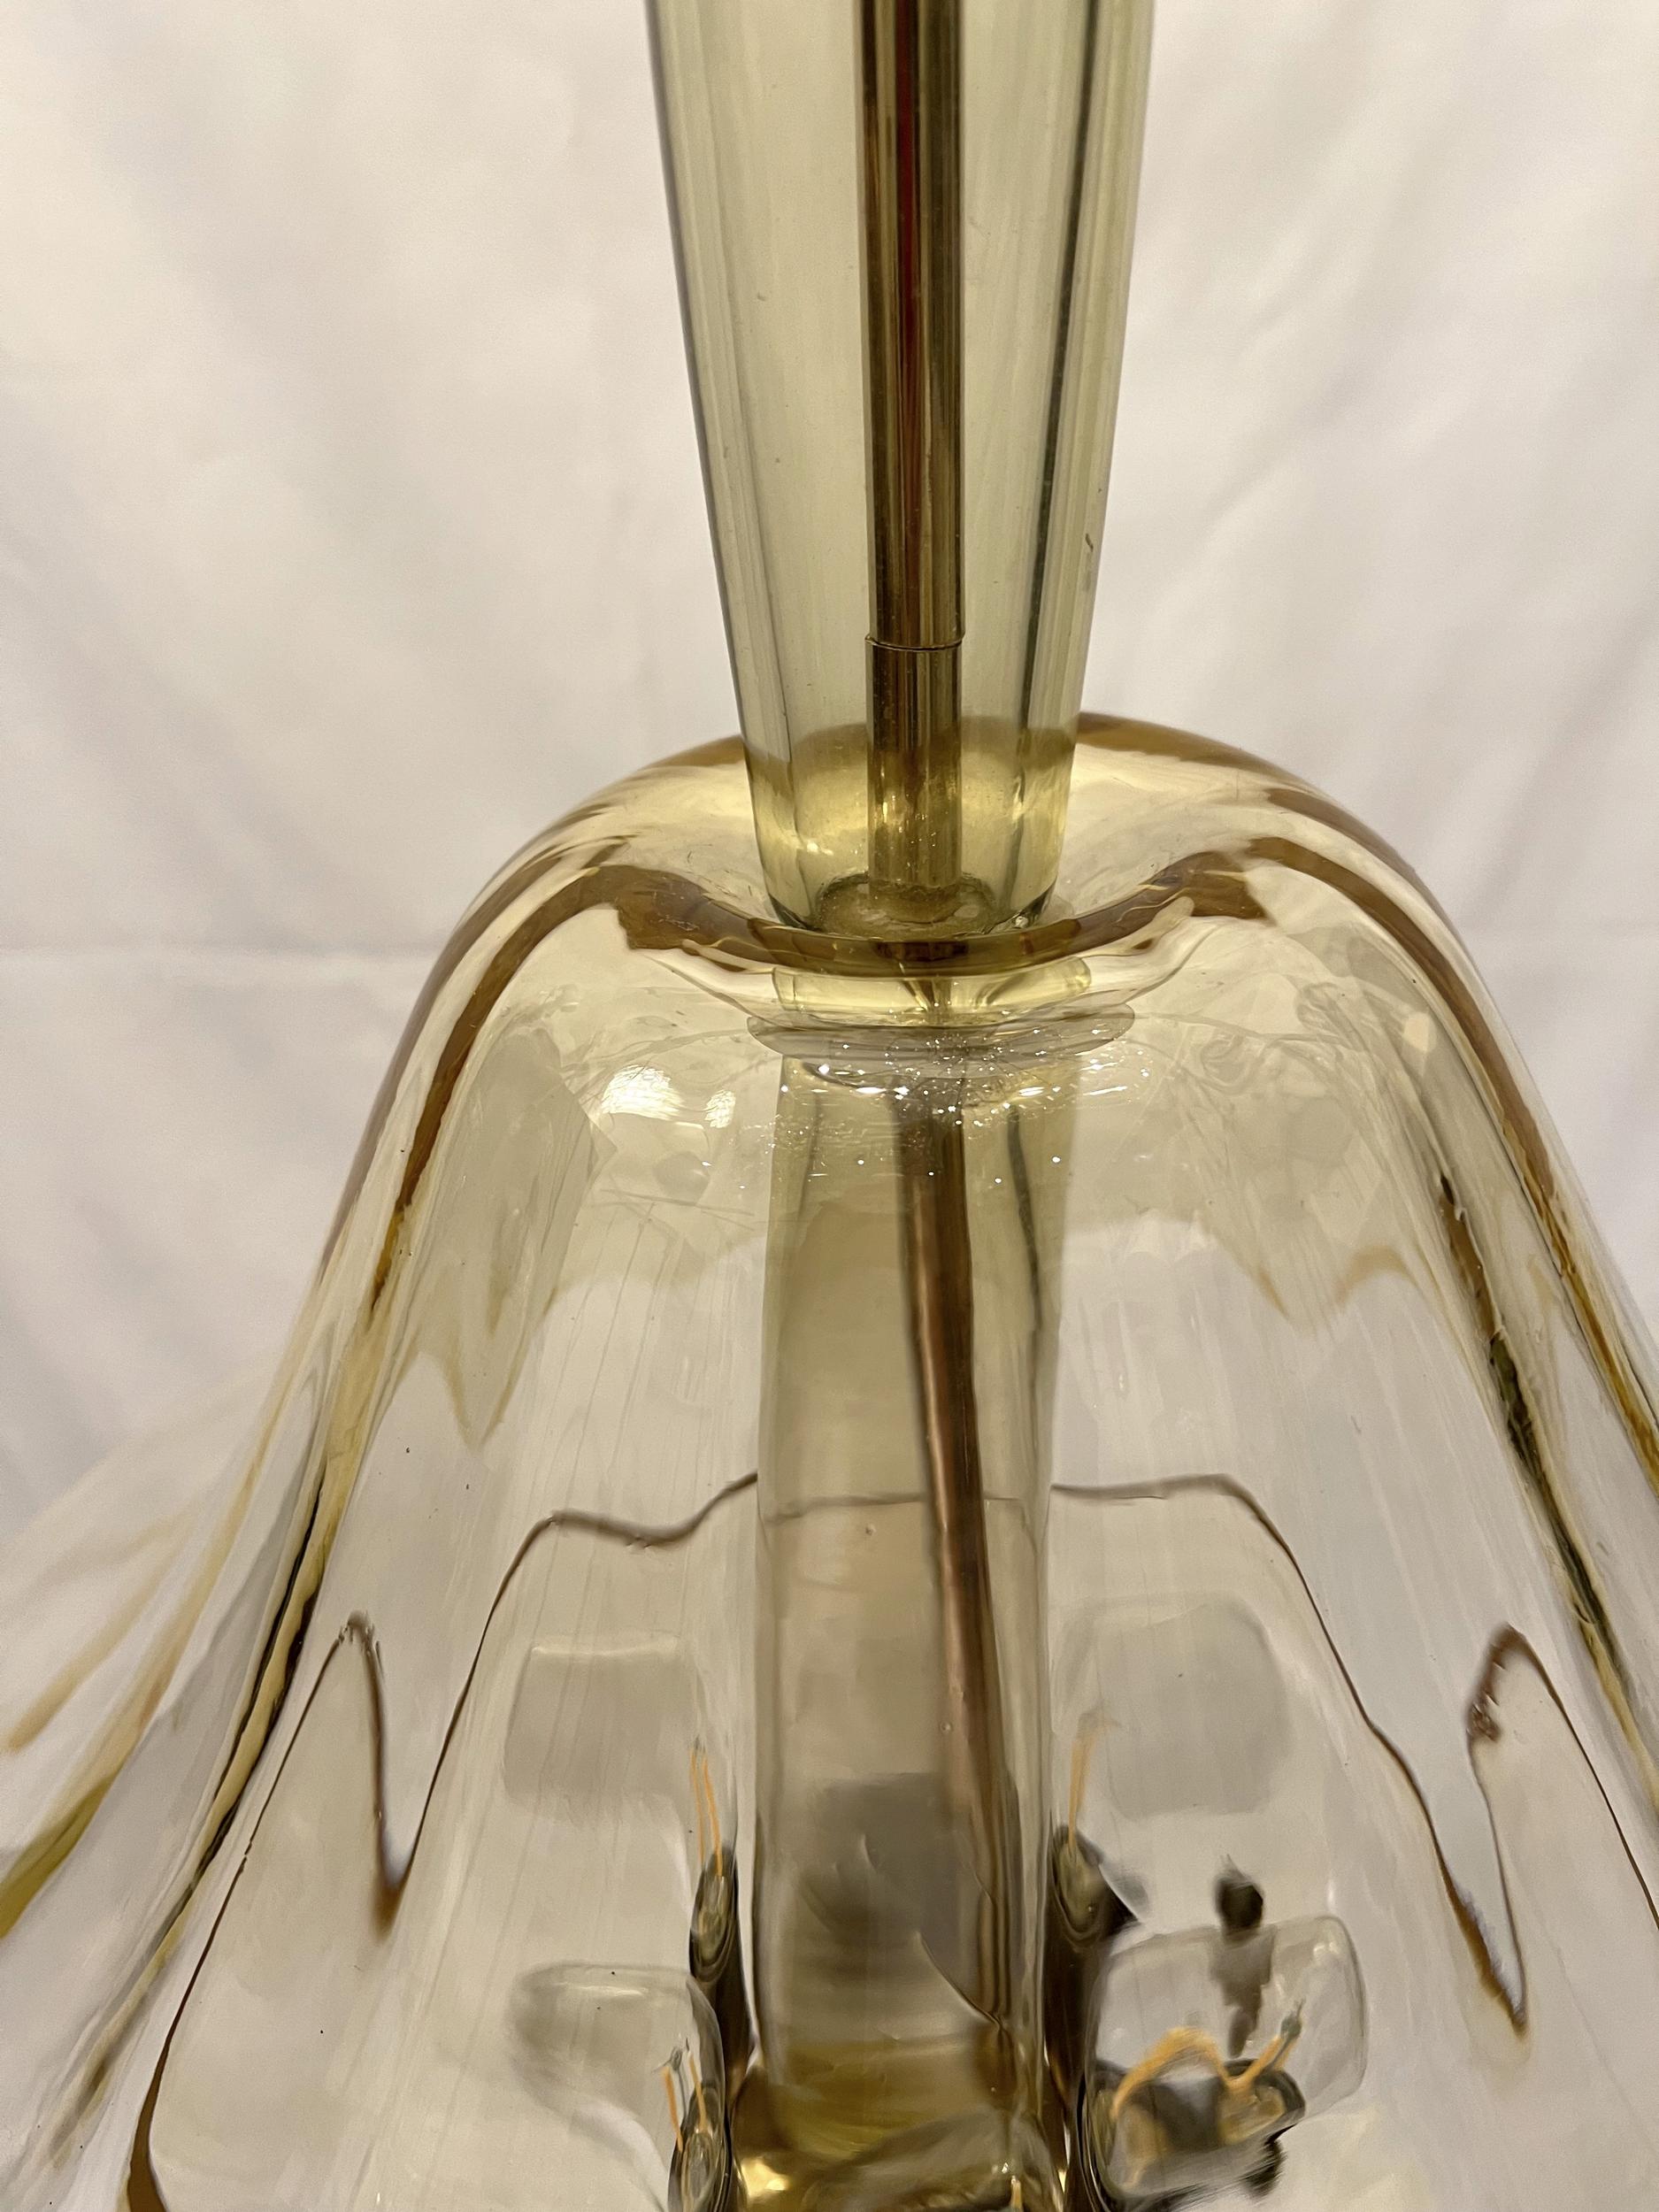 Rare 1960’s Murano  blown glass lantern in « champagne » color.
Six lights.